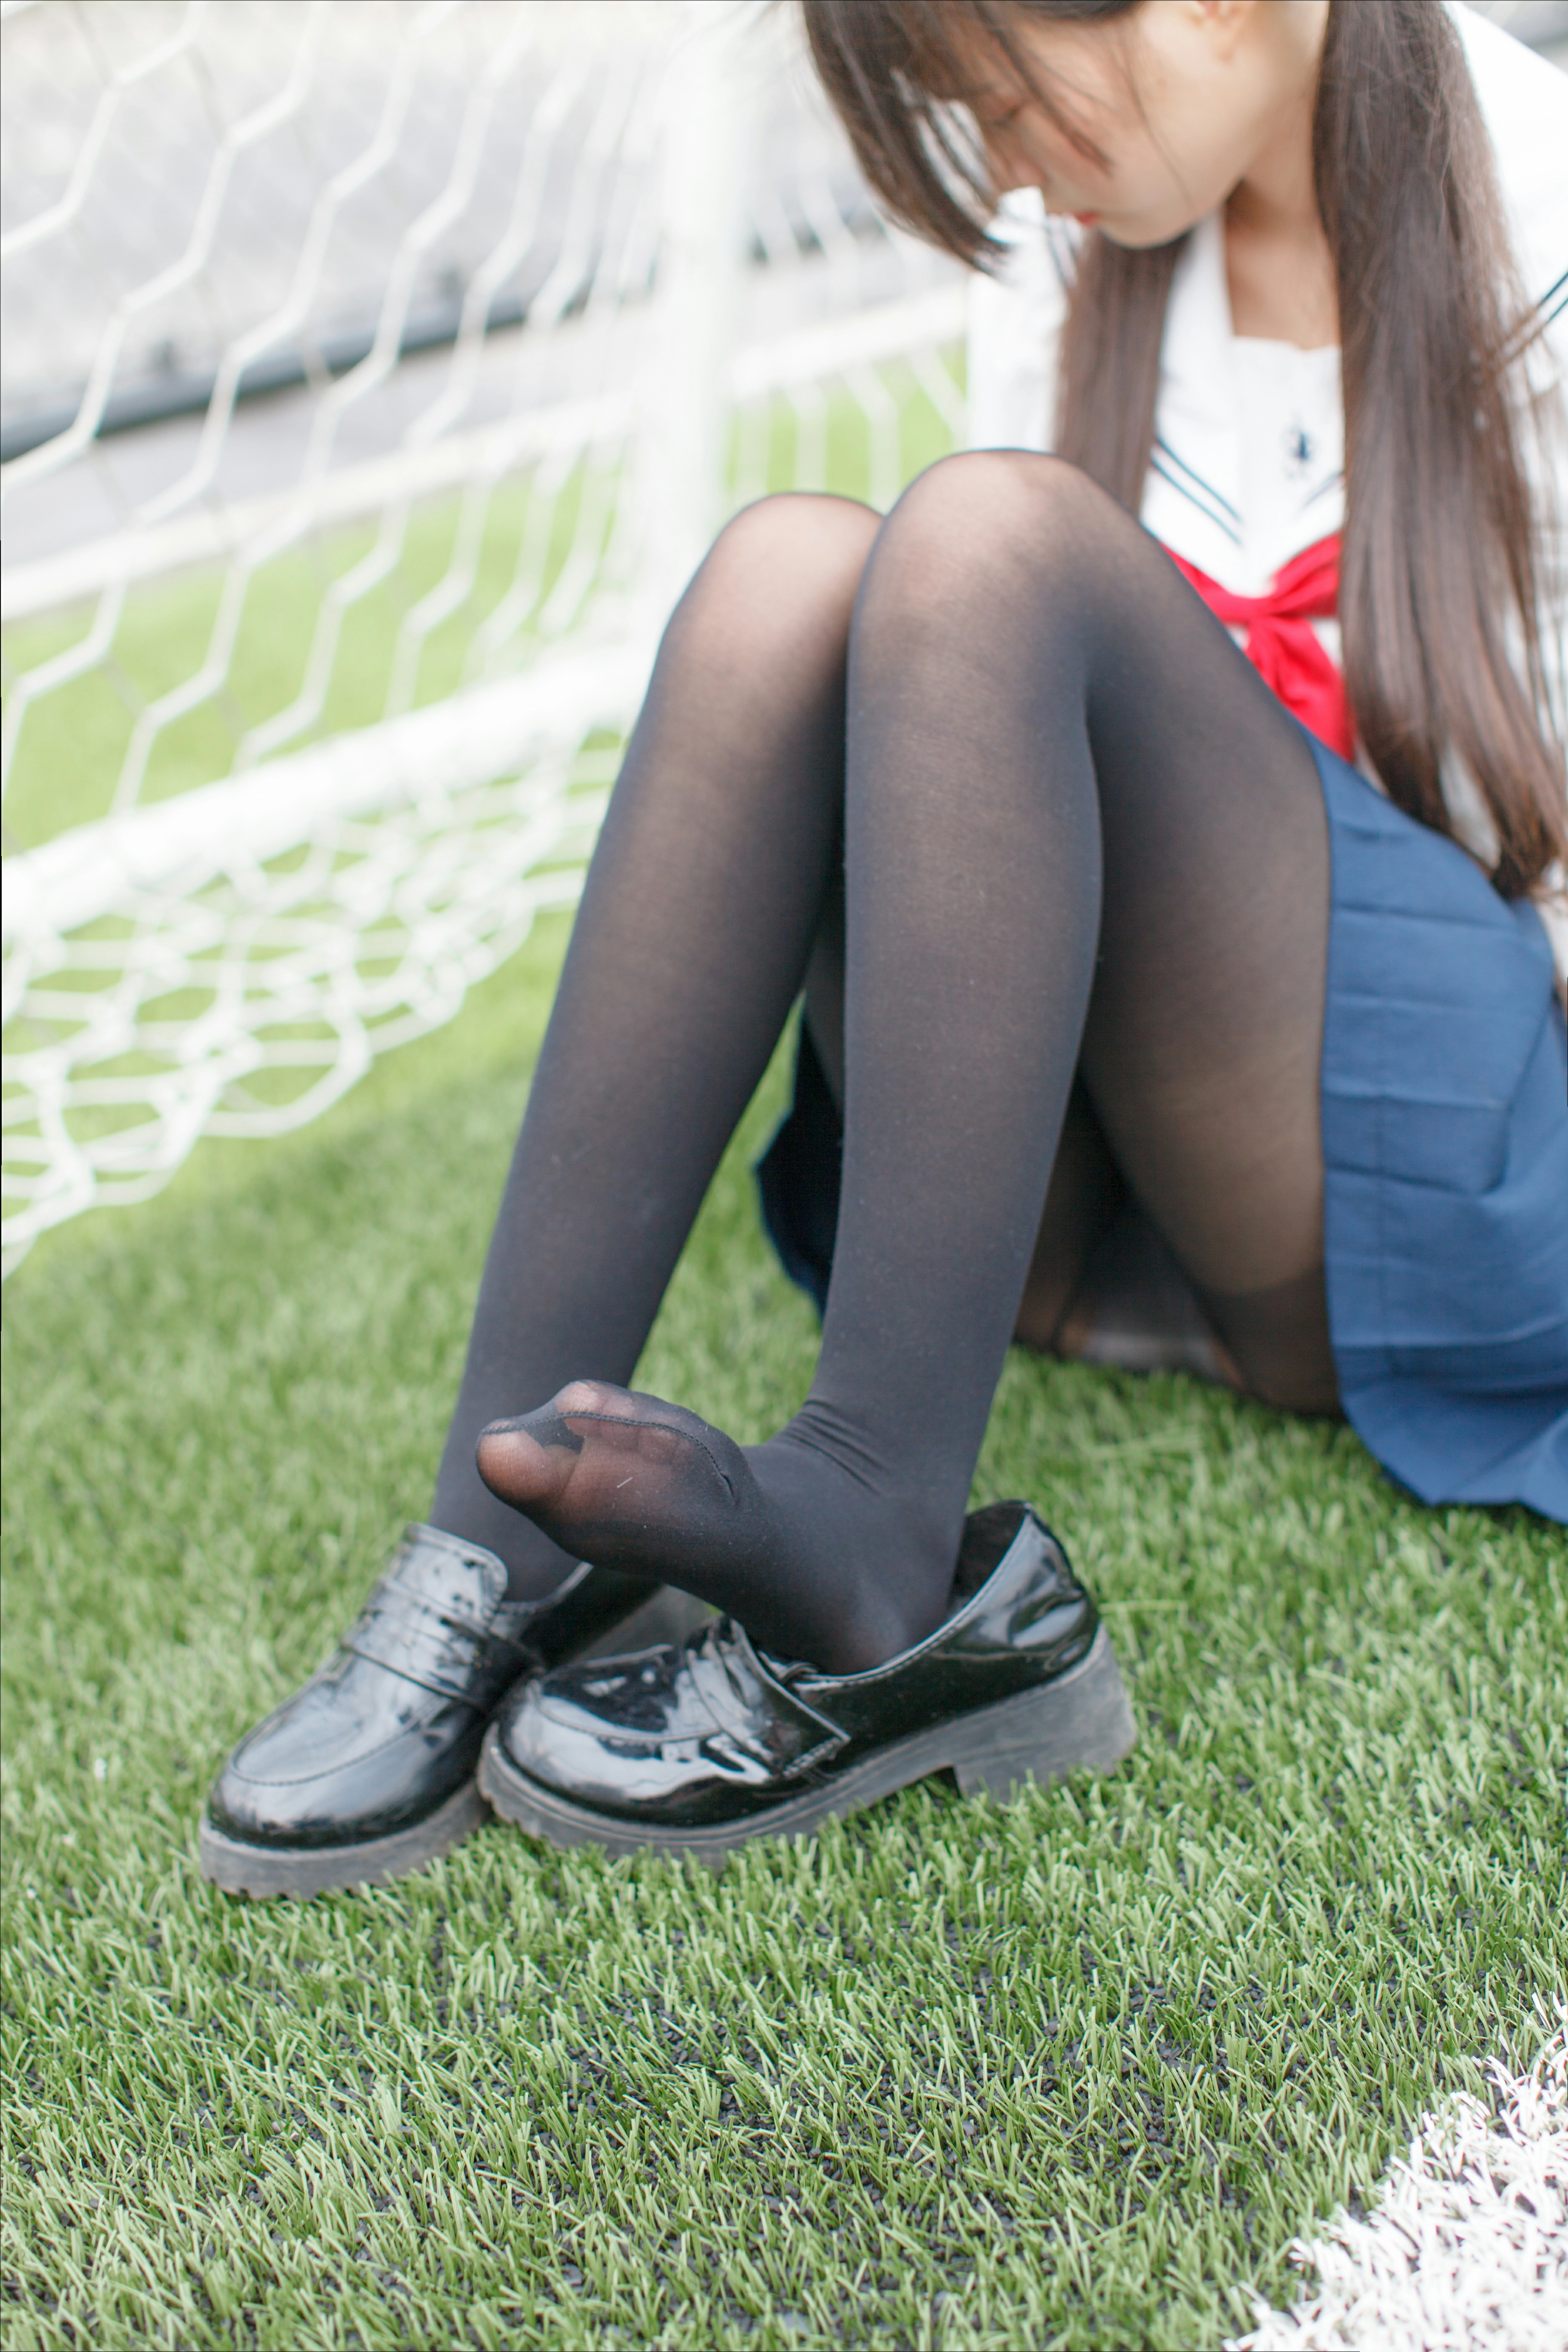 [少女秩序]群内福利01 清纯少女 JK制服与短裙加黑丝美腿性感写真集,